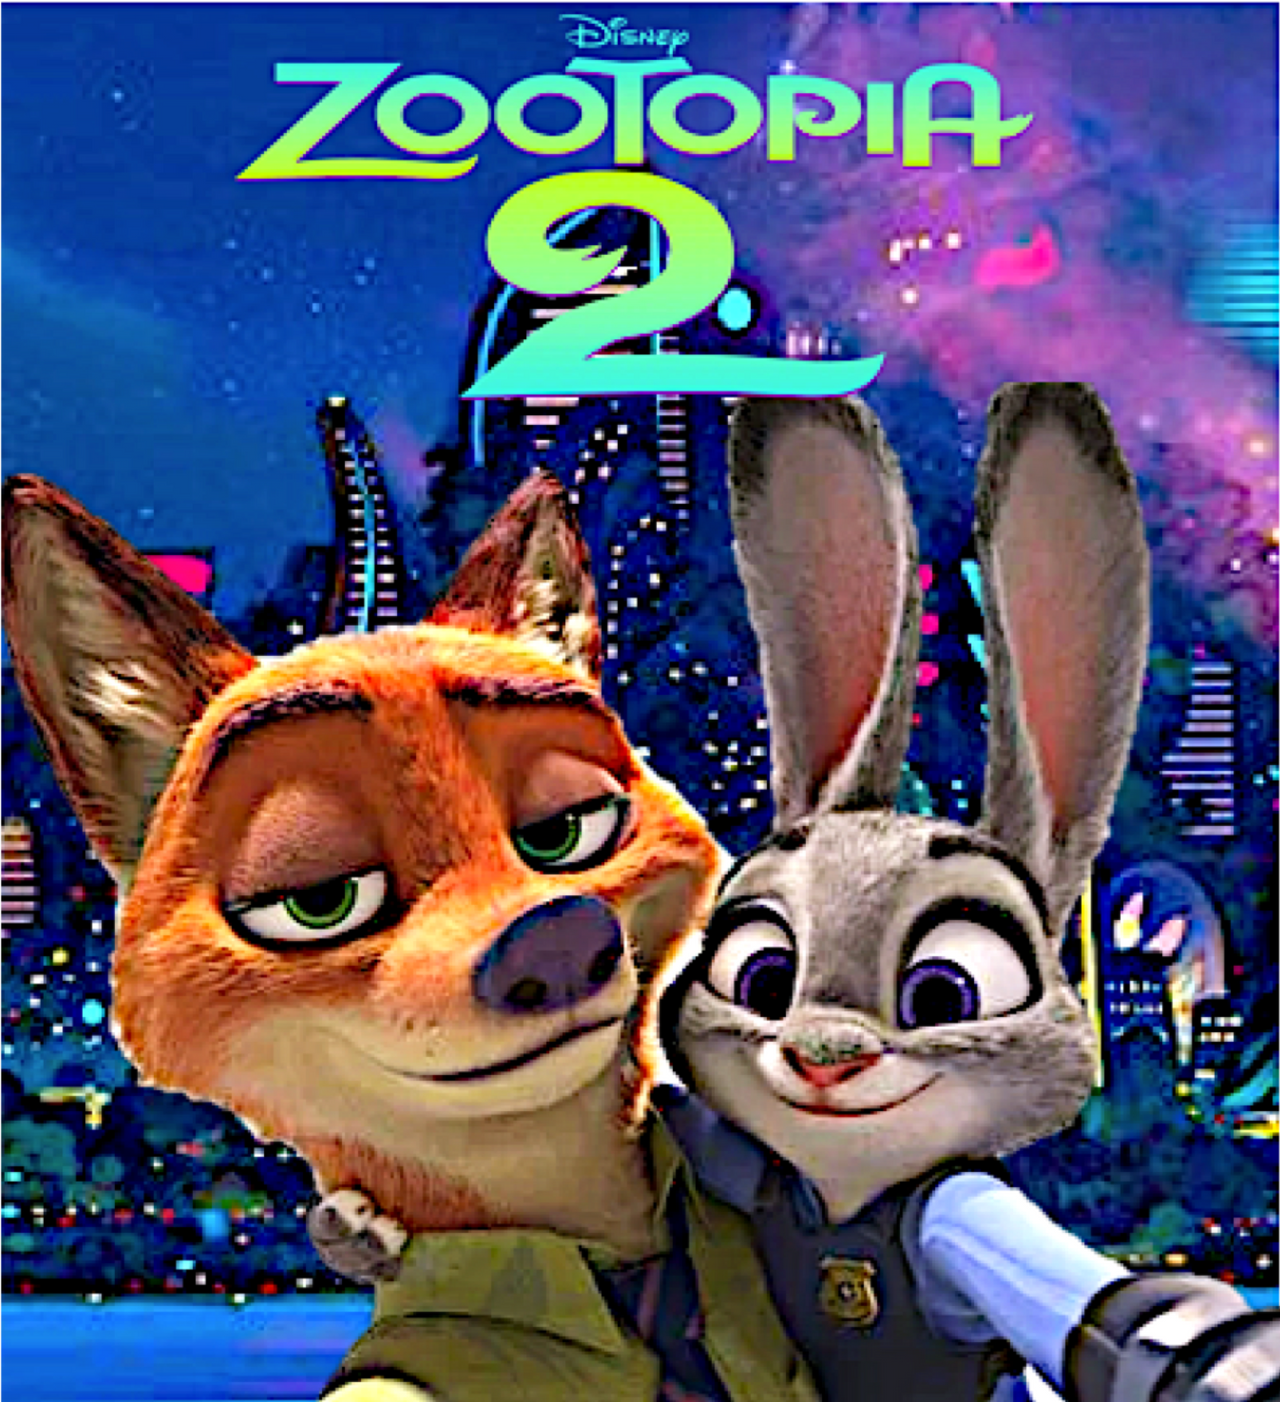 Zootopia 2 News